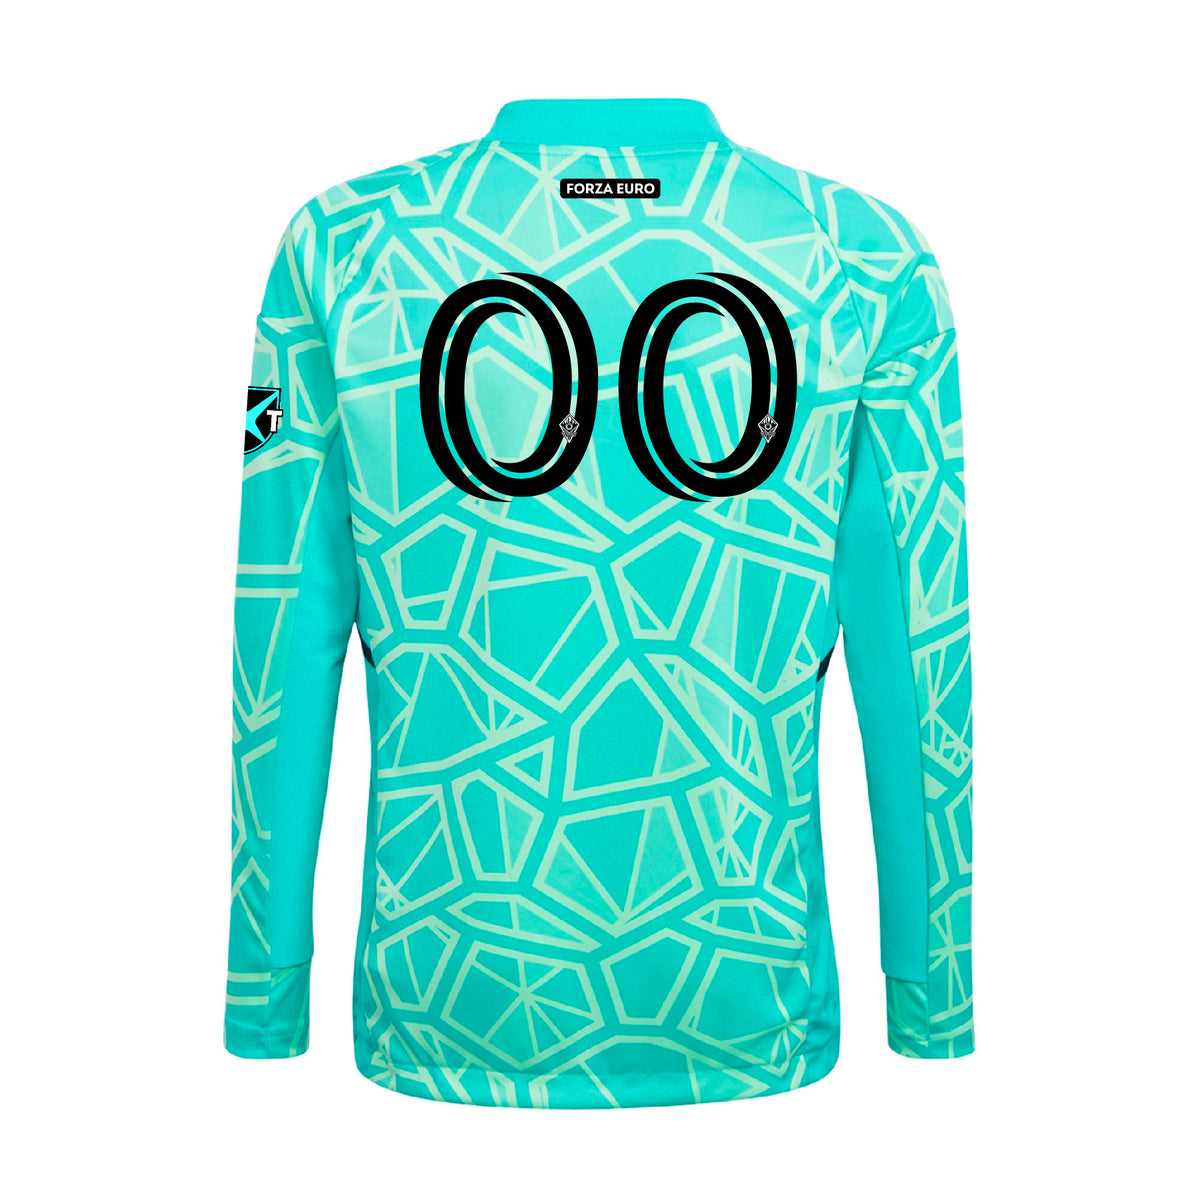 New Goalkeeper Jerseys Kits Long Sleeve Shirts Football Goalkeeper